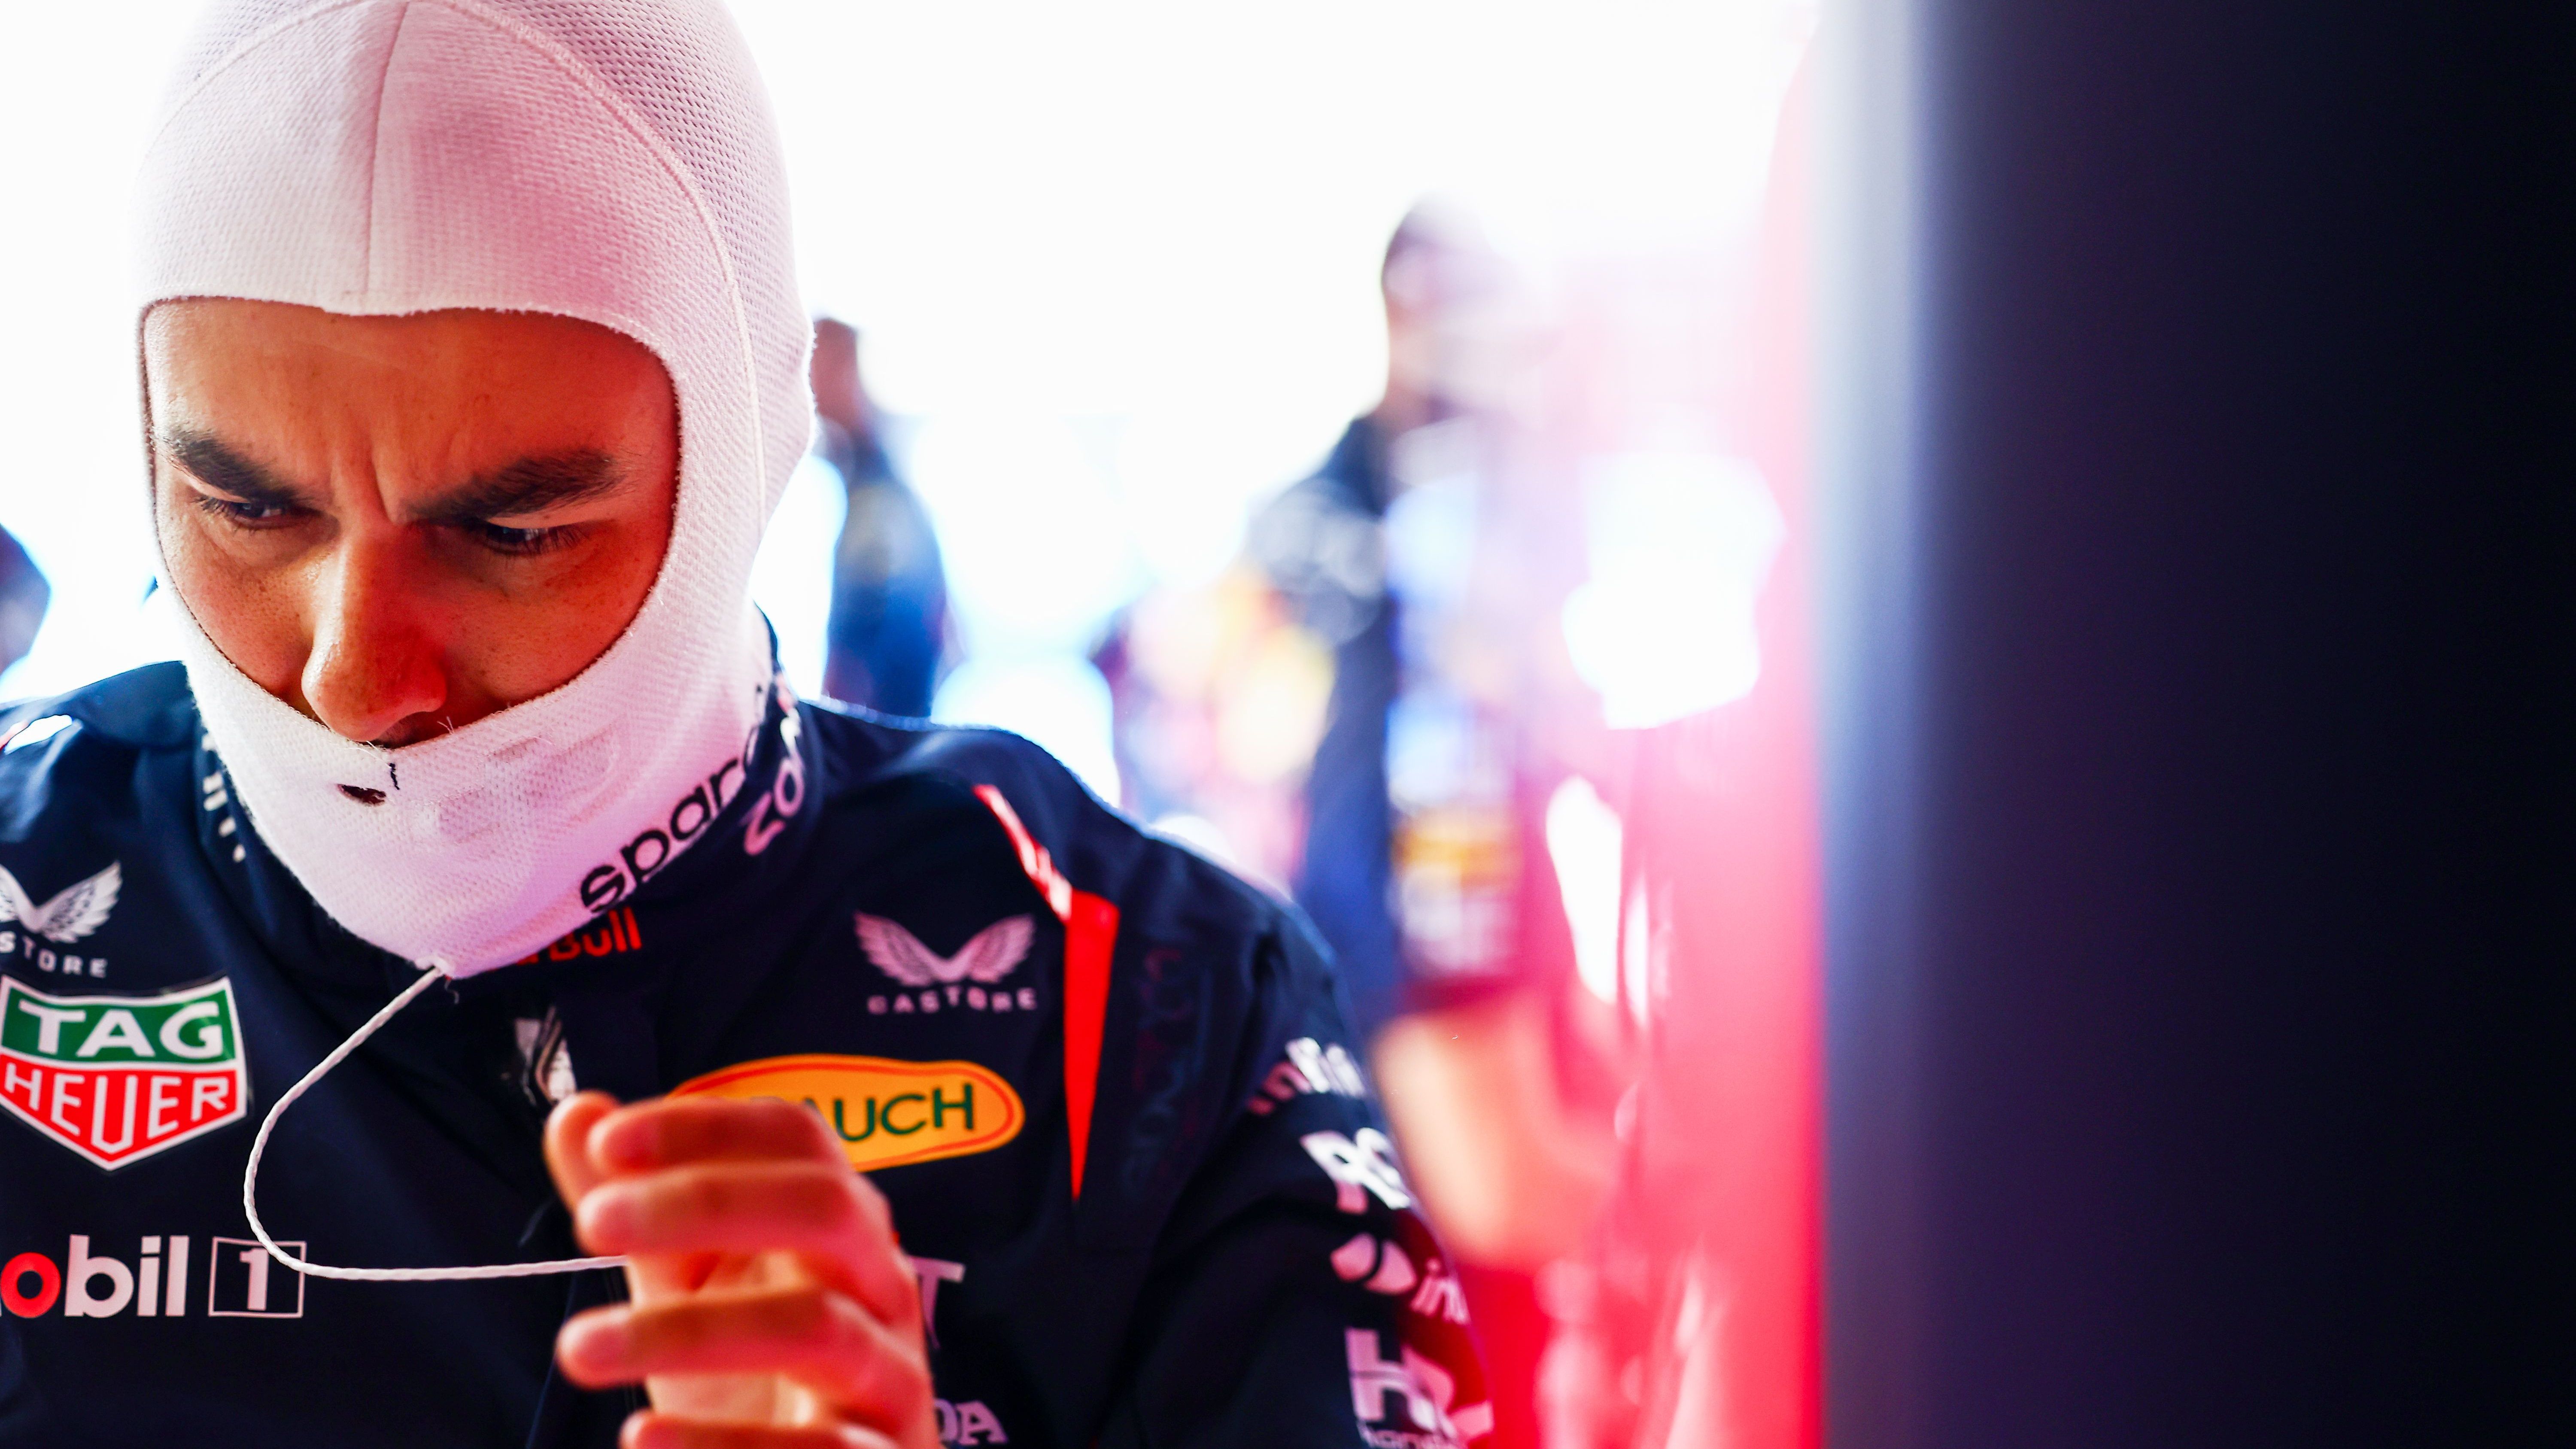 Sergio Perez fährt im besten Auto der Formel 1, die Leistungen sind jedoch weit weg von der Spitze. Trotz Vertrages gibt es Spekulationen um eine mögliche Ablöse des Mexikaners zur neuen Saison. Eine Verlängerung über 2024 hinaus bei Red Bull gilt als ausgeschlossen. <em><strong>ran</strong></em> gibt einen Überblick über mögliche Ersatz-Kandidaten 2024 und 2025: